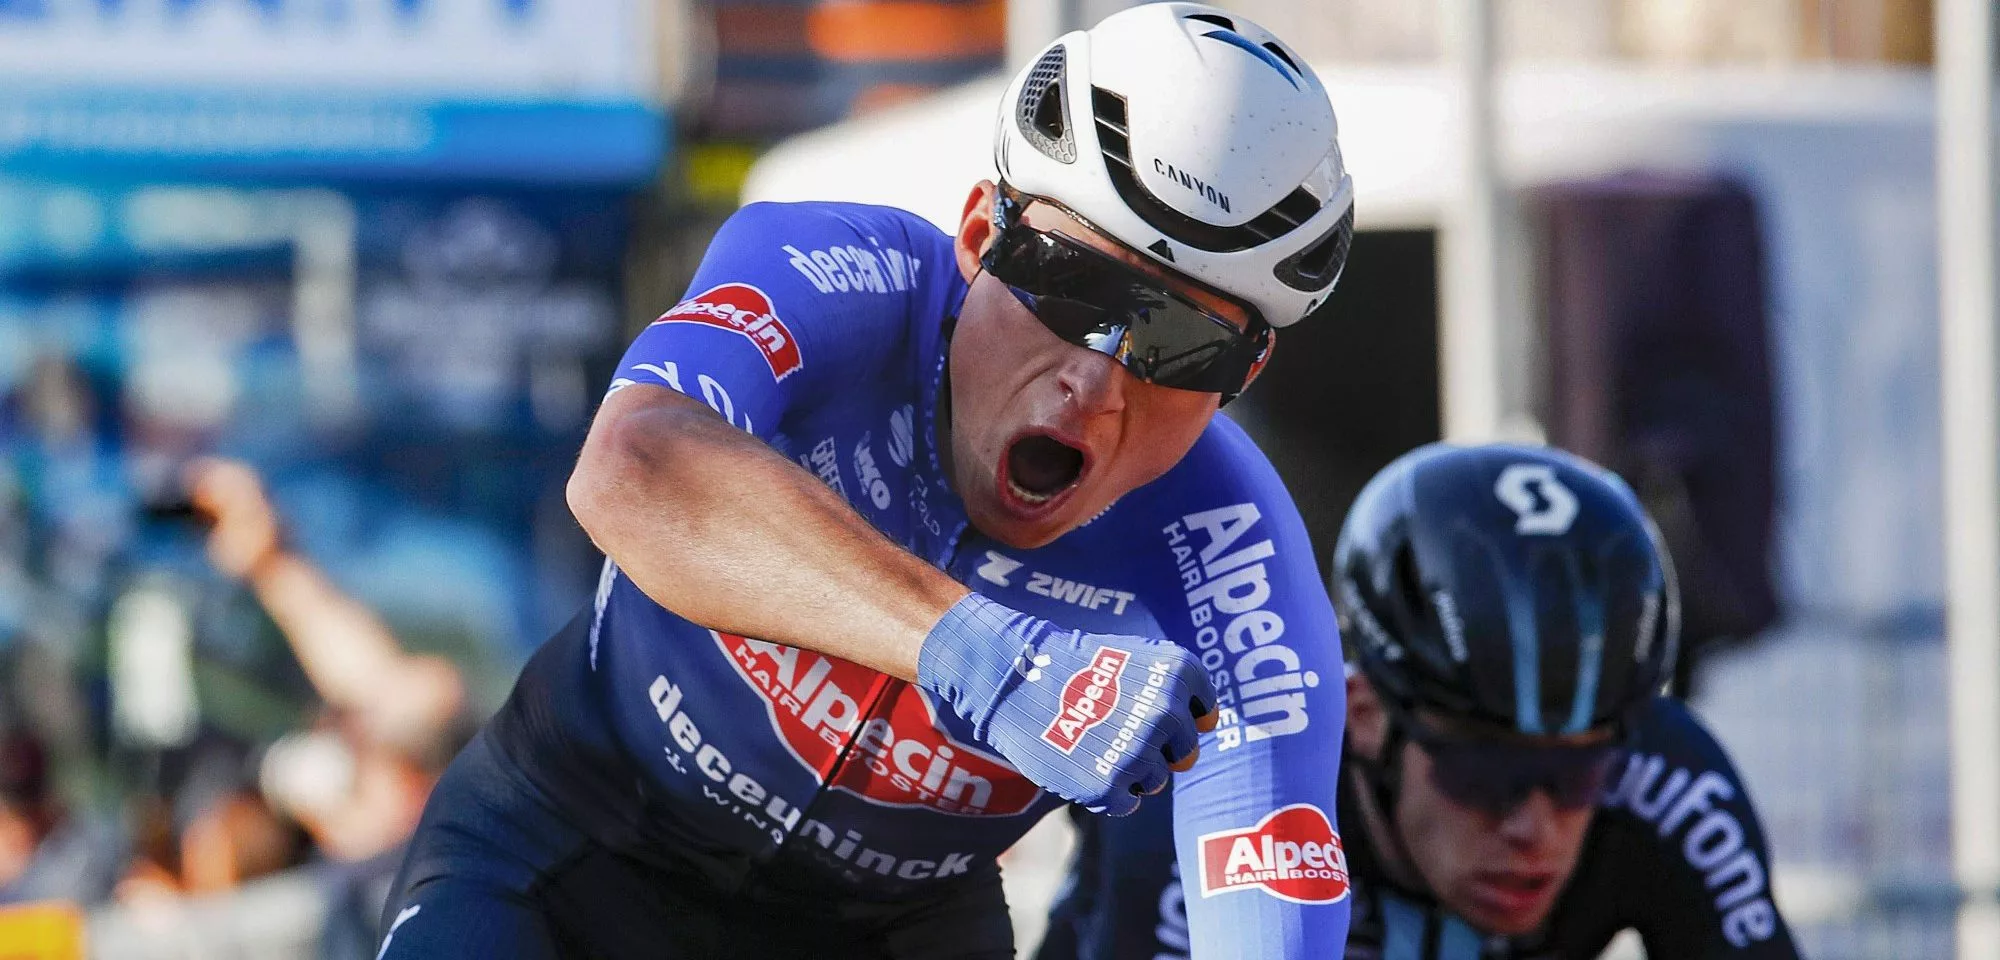 Йеспер Филипсен во второй рай в карьере выиграл велогонку «Схелдепрейс»